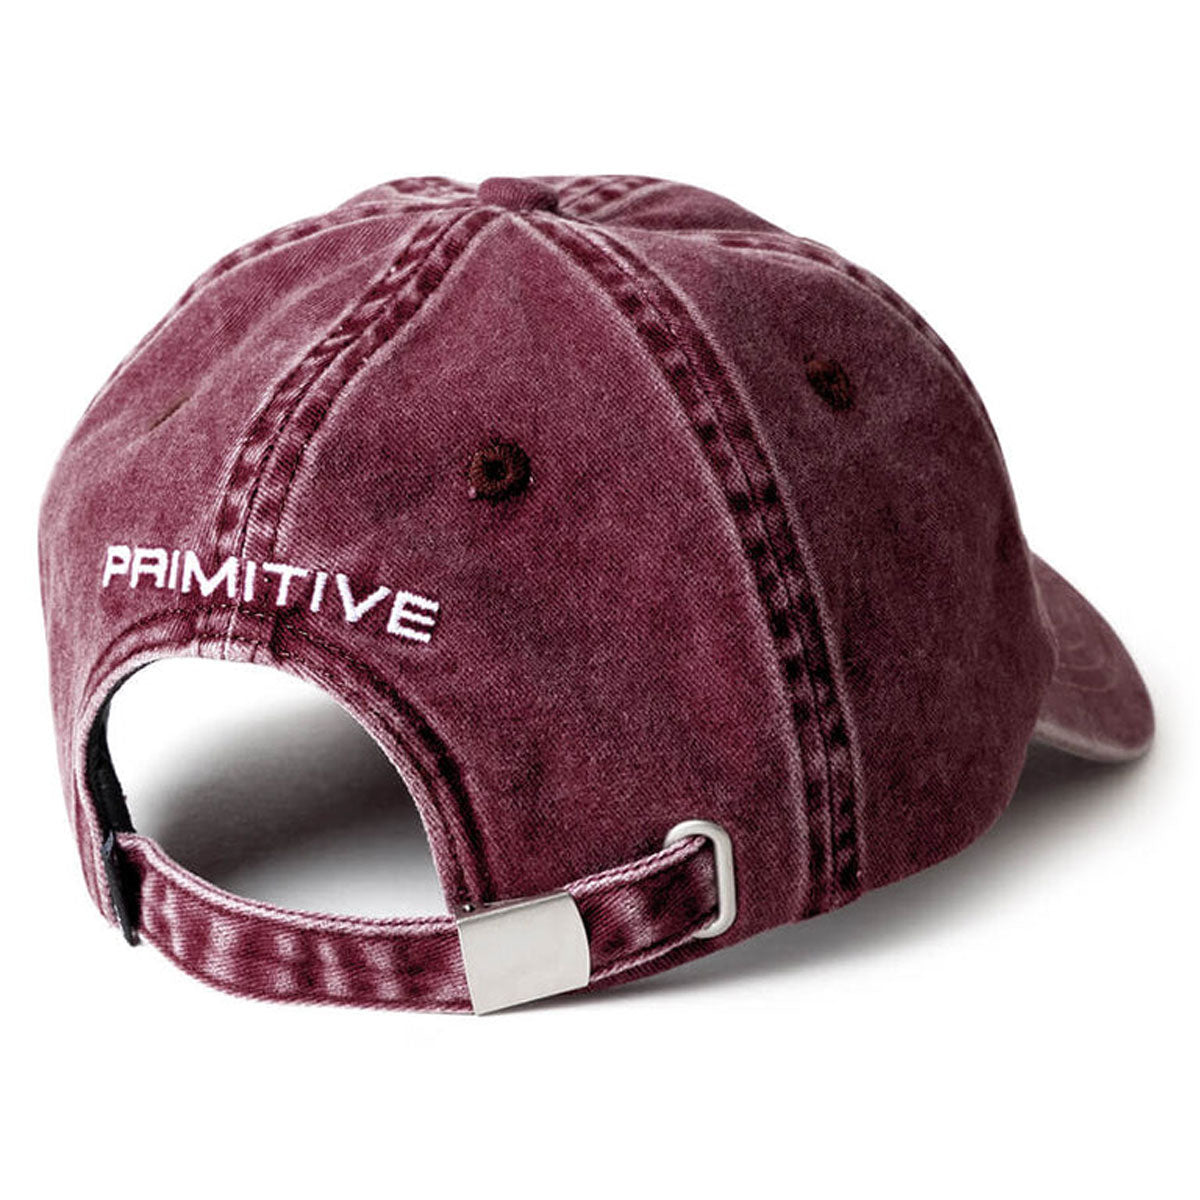 Primitive Rosey Over-dyed Strapback Hat - Burgundy image 2